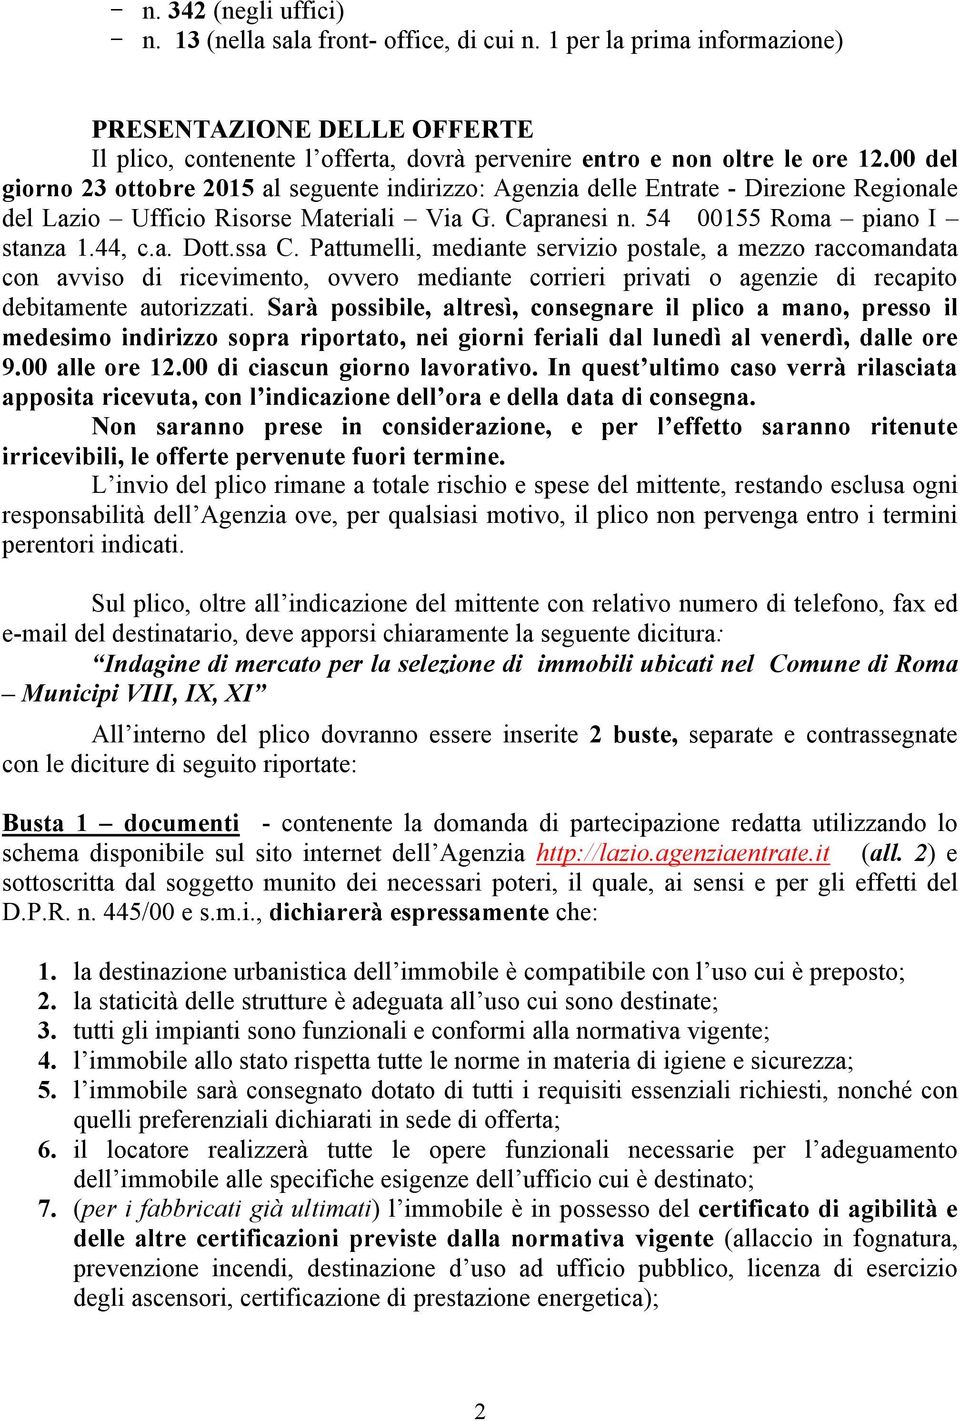 00 del giorno 23 ottobre 2015 al seguente indirizzo: Agenzia delle Entrate - Direzione Regionale del Lazio Ufficio Risorse Materiali Via G. Capranesi n. 54 00155 Roma piano I stanza 1.44, c.a. Dott.